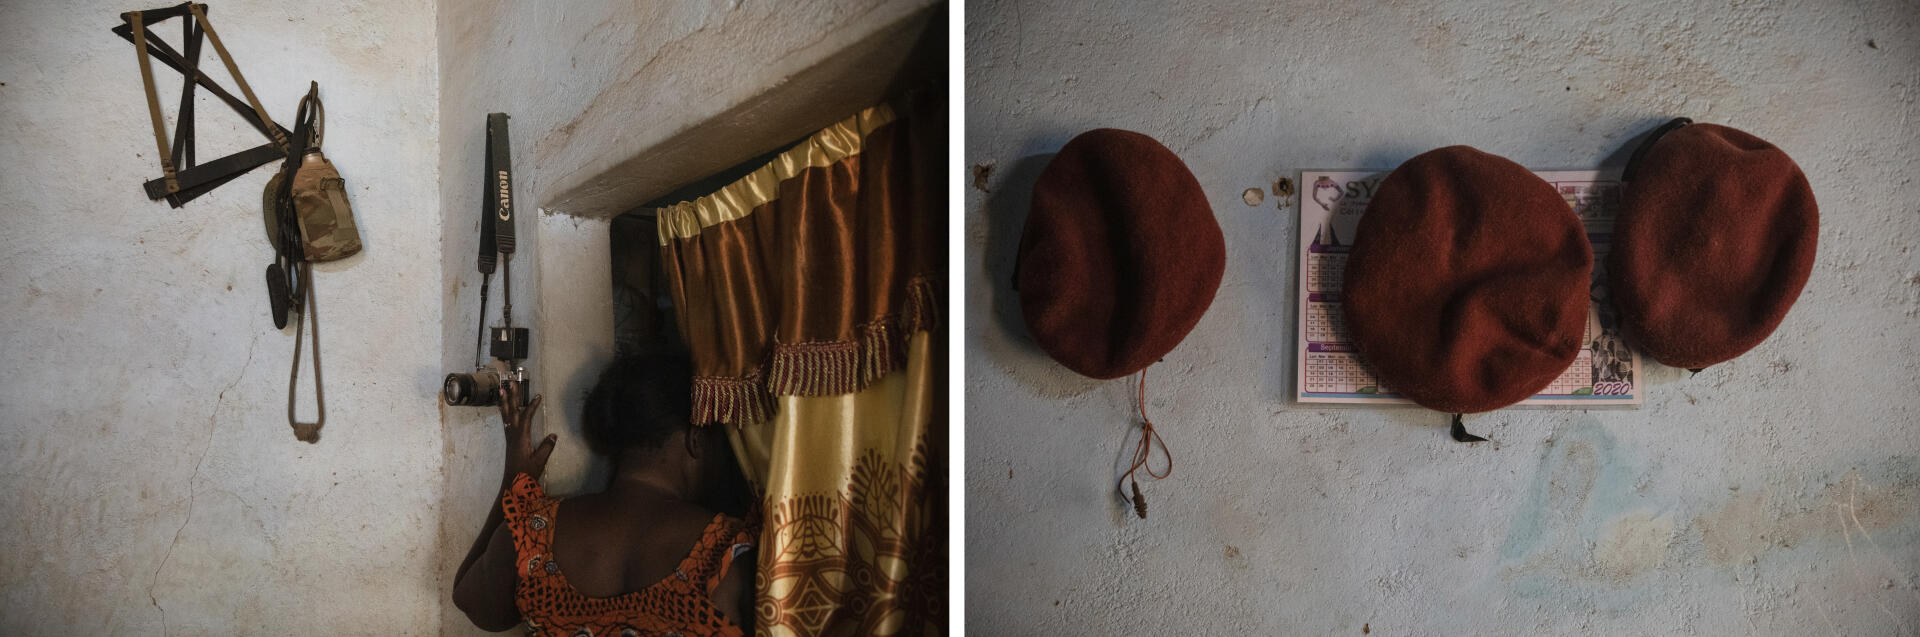 Adissa Nissao Traoré a perdu son mari en octobre 2018, dans l’est du Burkina Faso. Elle s’est battue pendant plus d’un an contre sa belle-famille pour conserver la garde de ses deux enfants et l’indemnité versée aux familles de militaires tués. Sur le mur de son logement à Ouagadougou, le 30 mars 2021, on retrouve l’appareil photo et les bérets de son époux décédé.